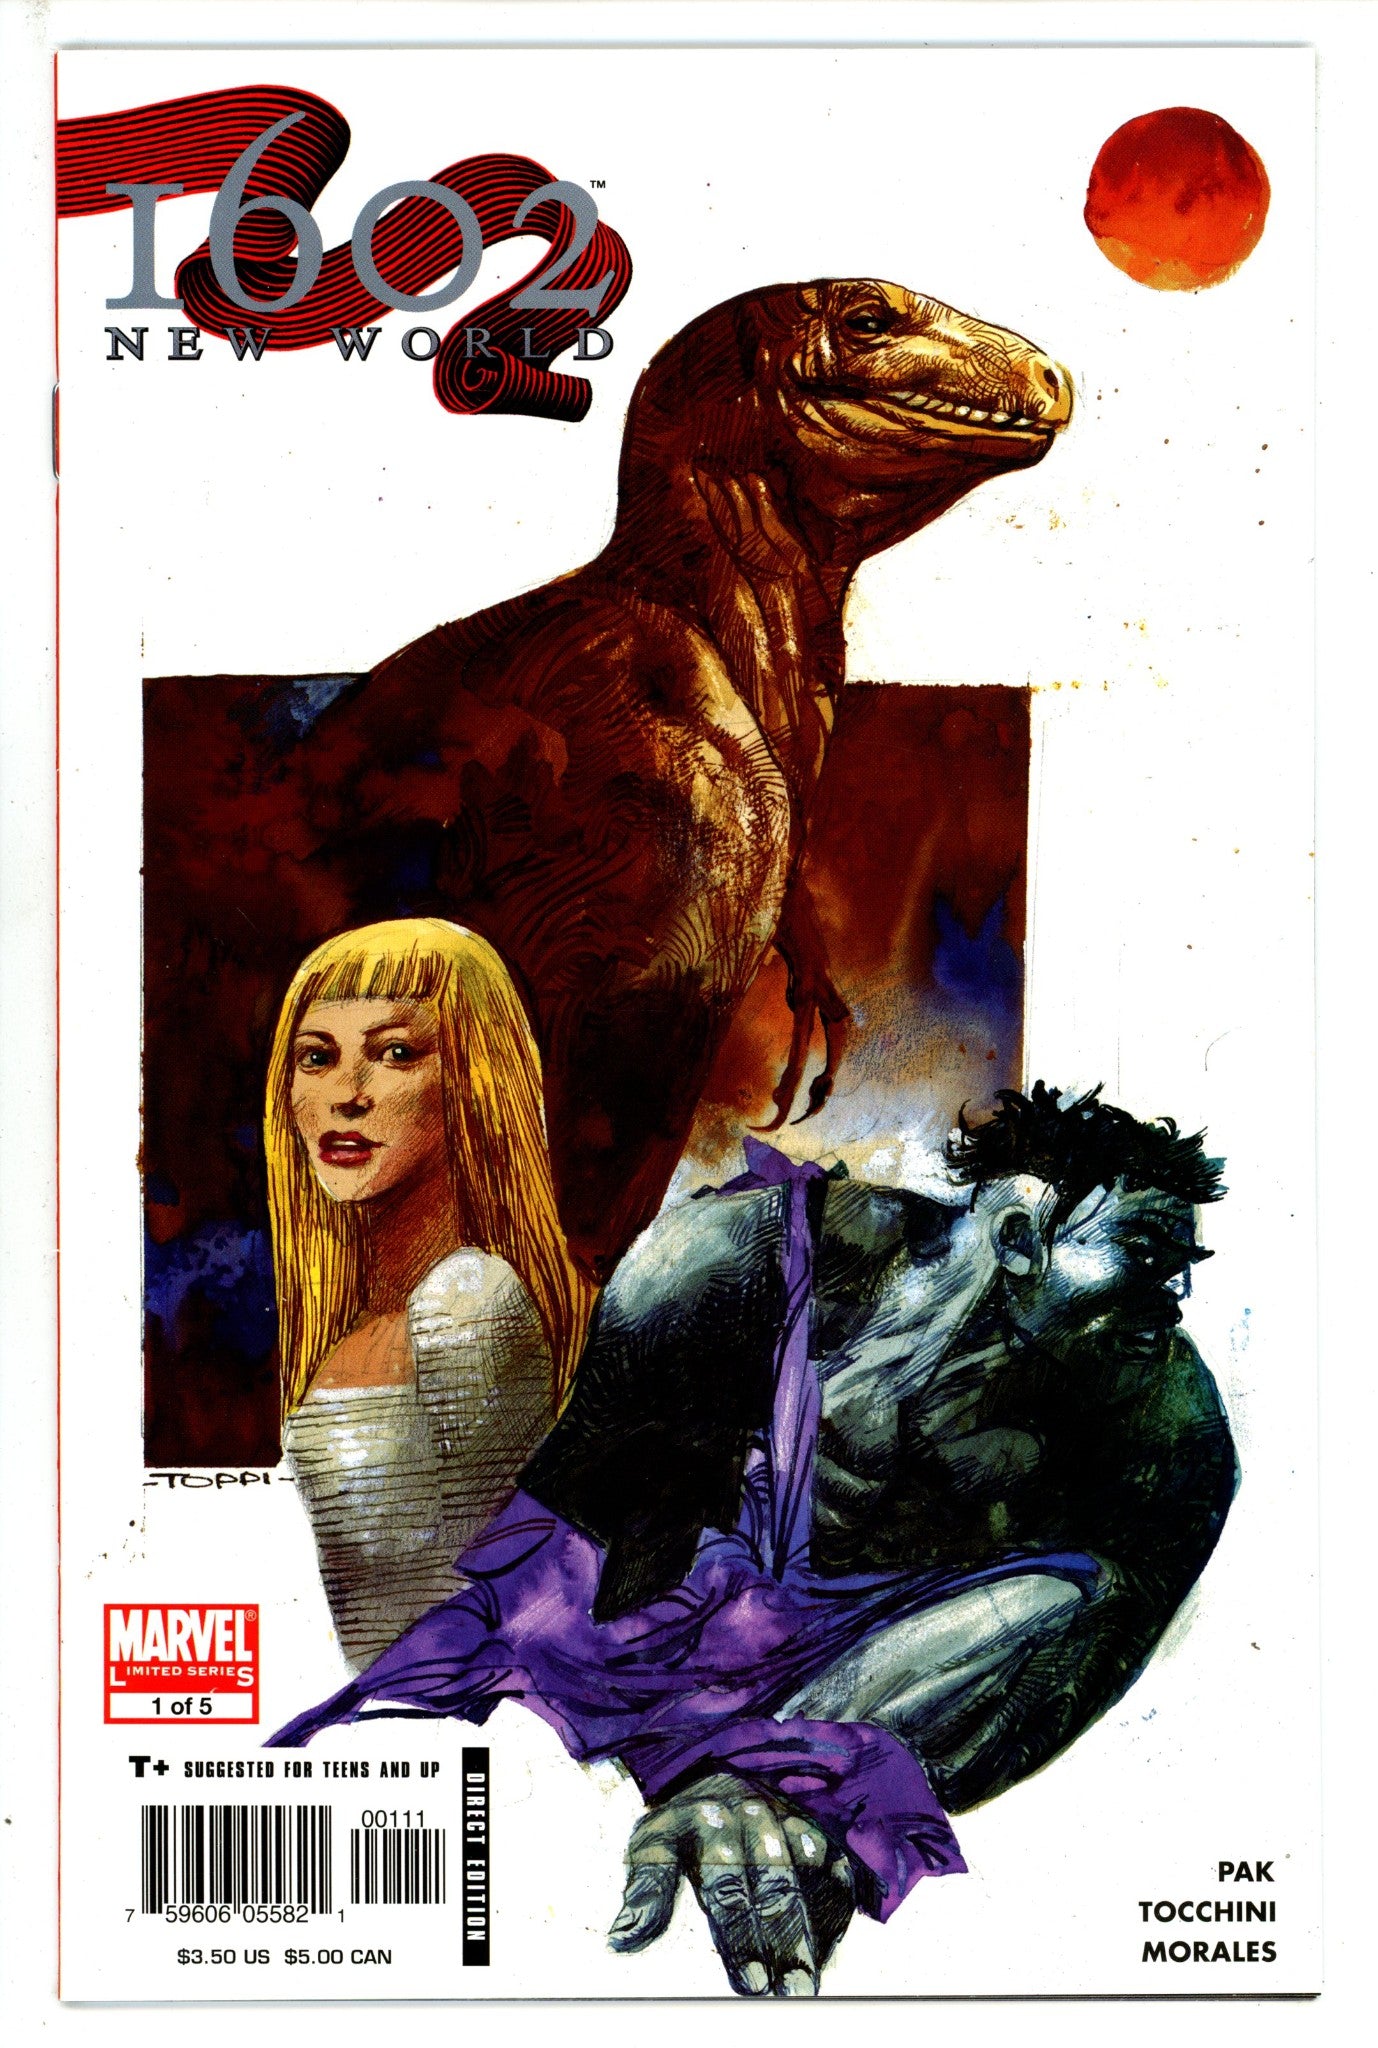 Marvel 1602: New World 1 (2005)